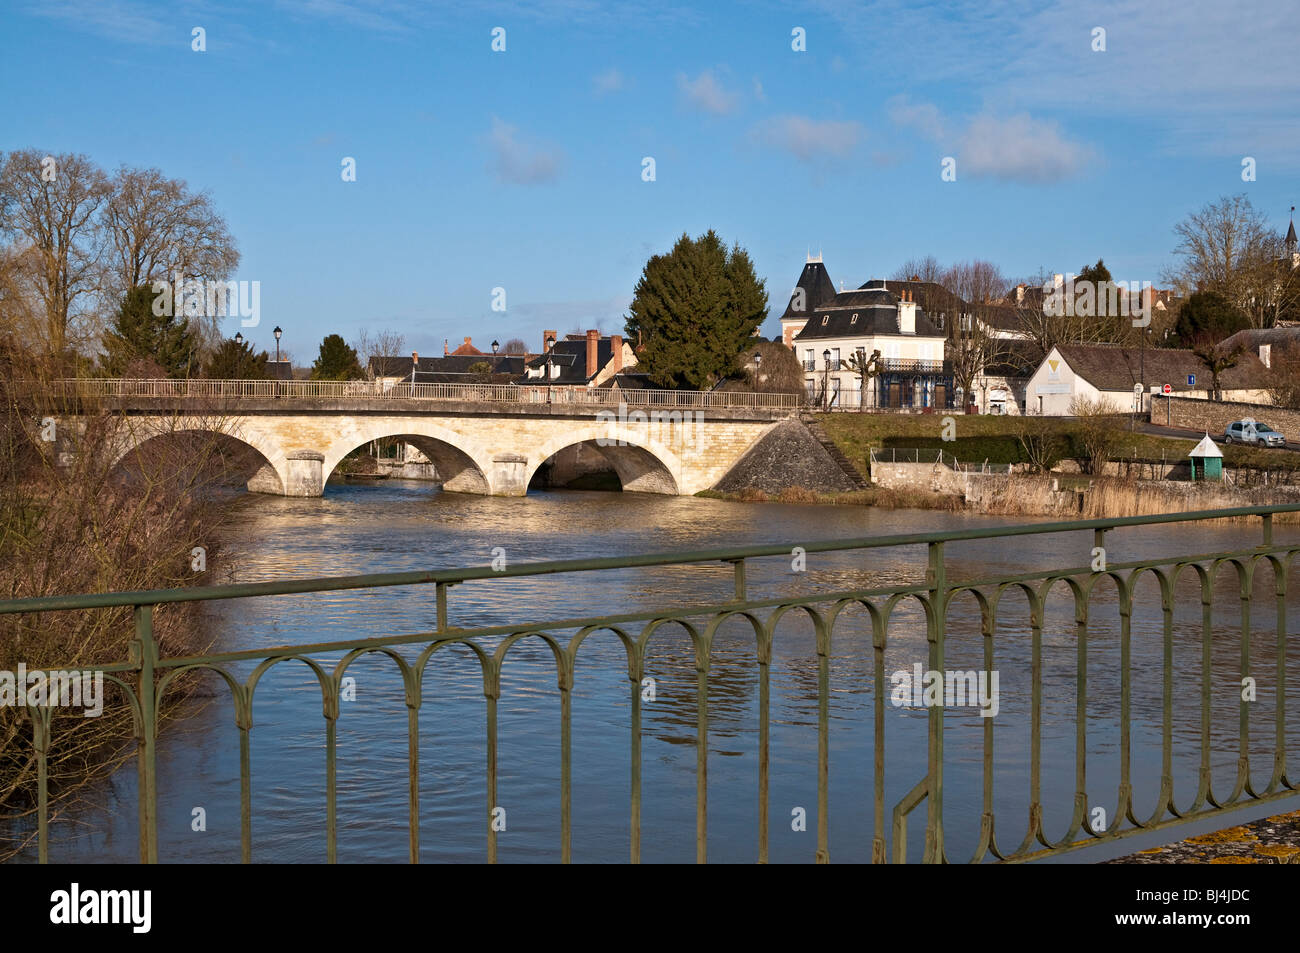 Gewölbte steinerne Brücke über Fluss Claise - Preuilly-Sur-Claise, Frankreich. Stockfoto